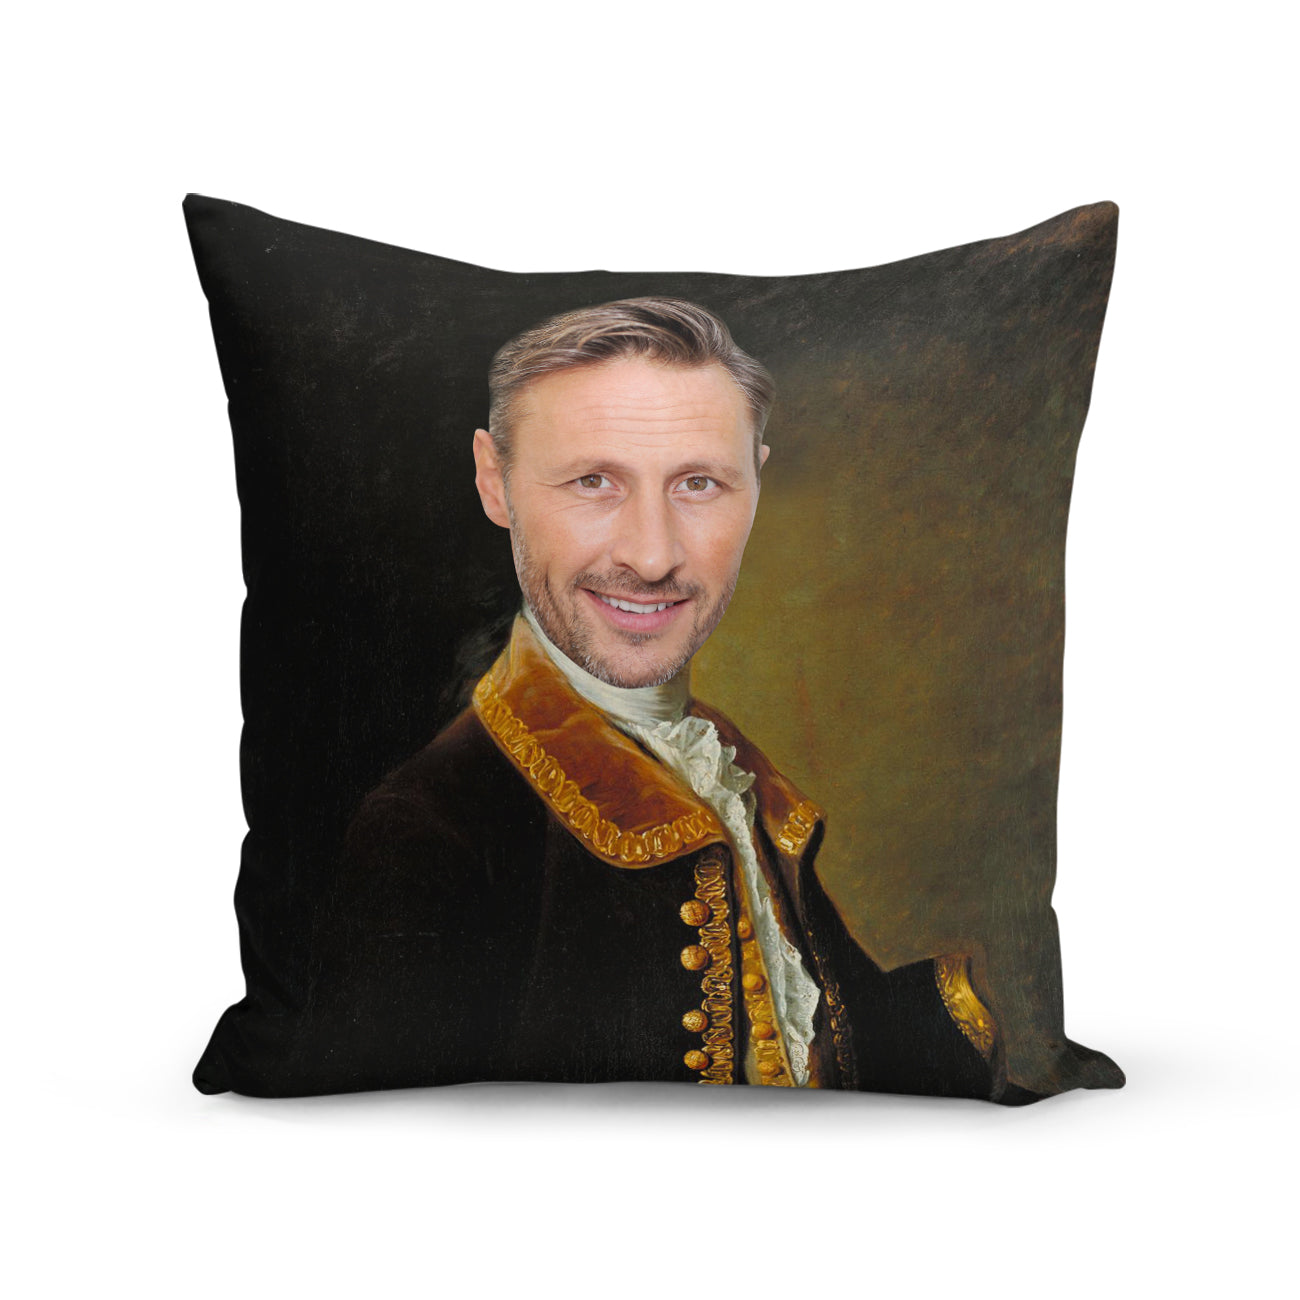 The Royal Guy Cushion